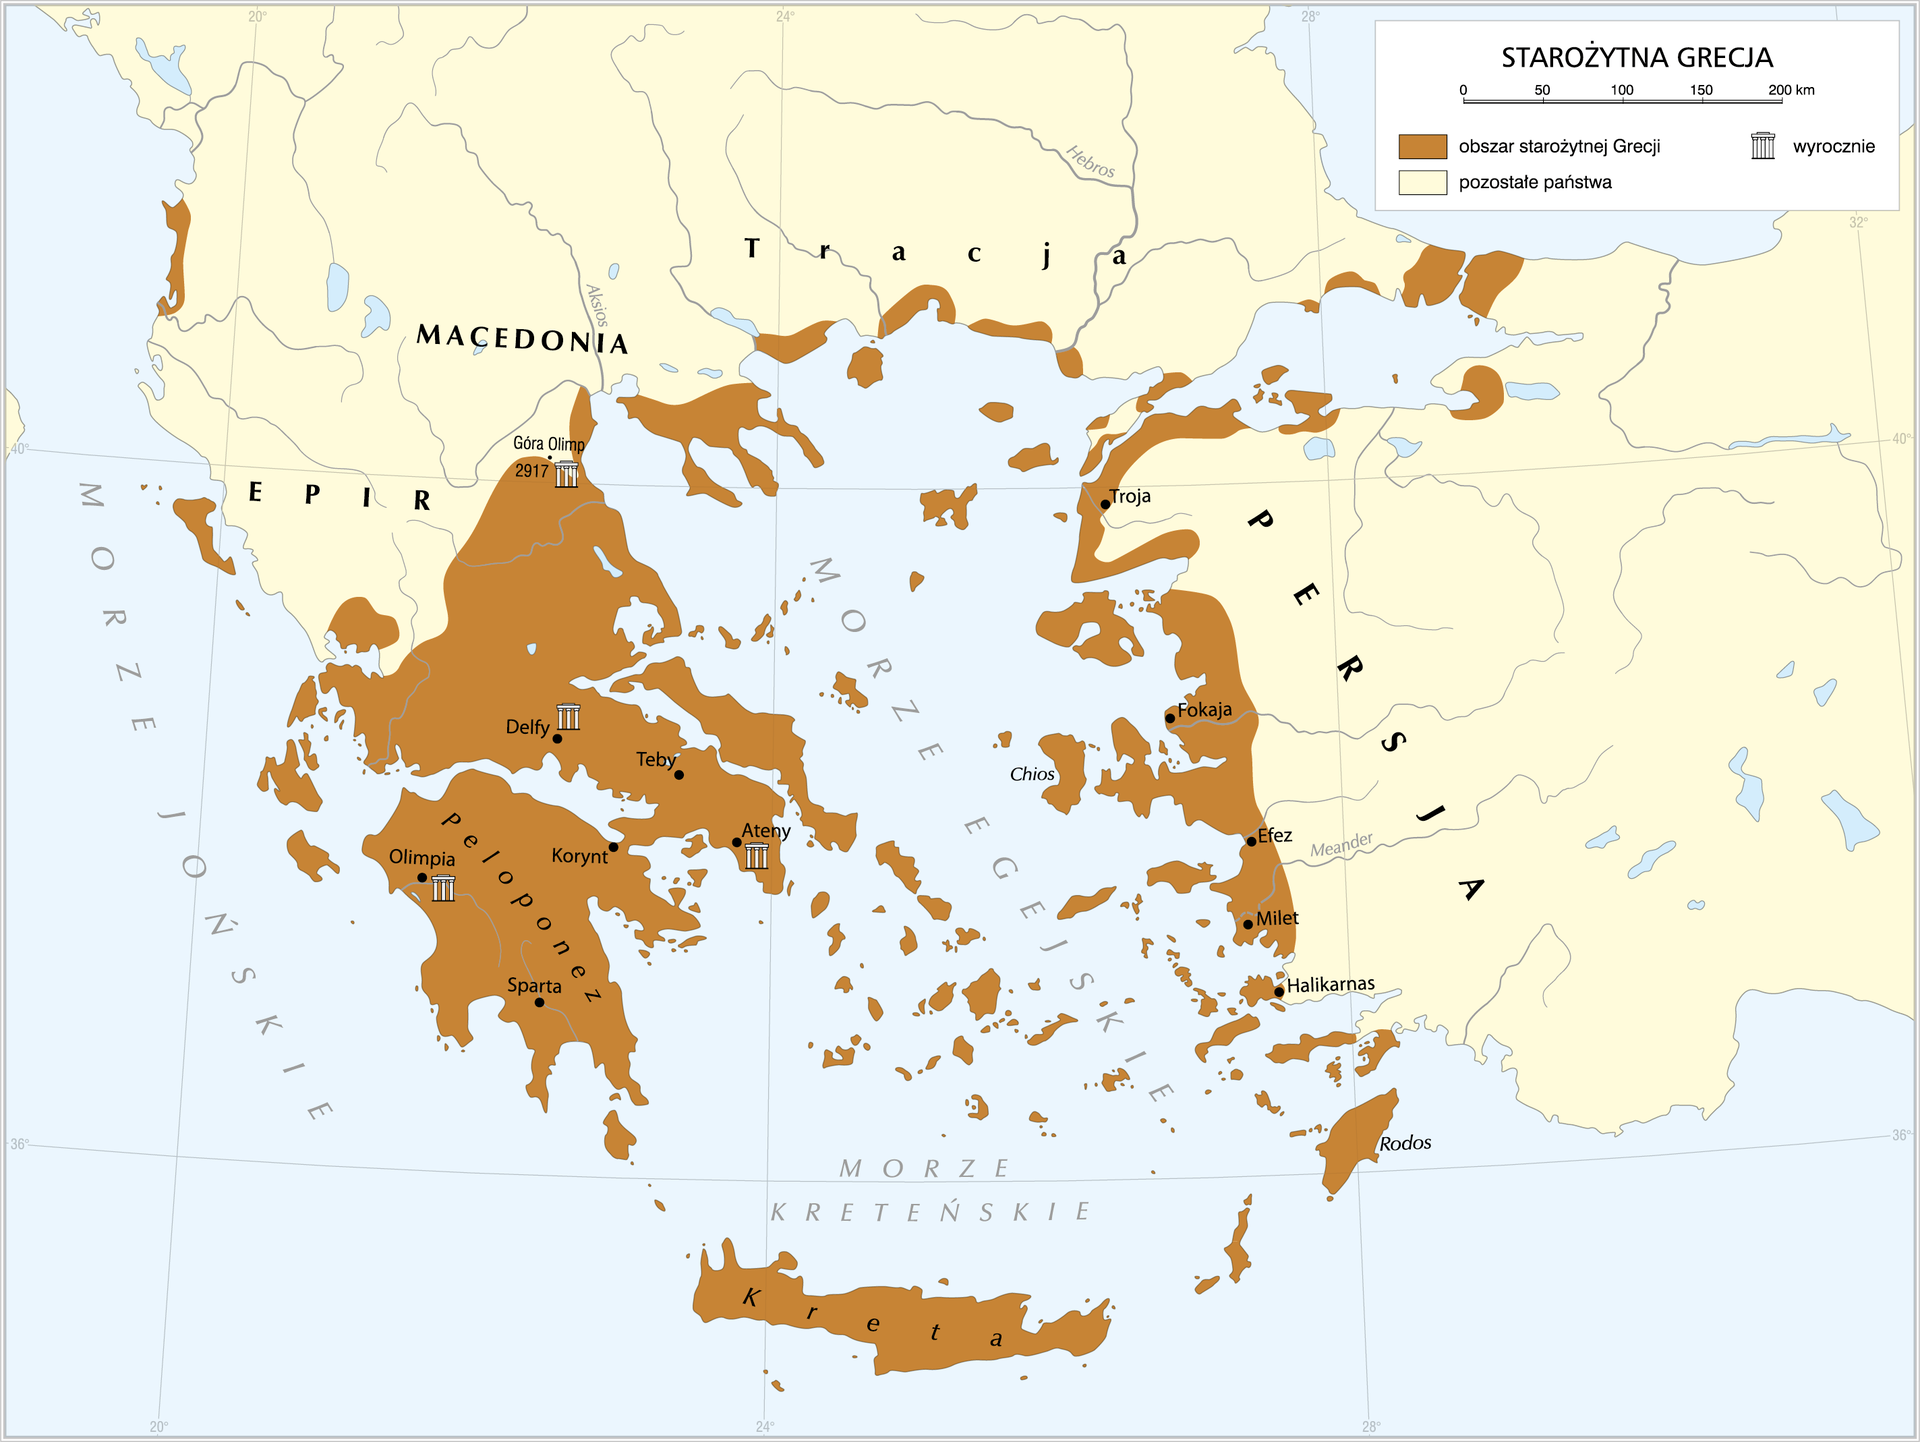 Mapa przedstawia starożytną Grecję. Zajmowała ona obszar wysp Jońskich i Egejskich, Krety, Rodos, Peloponezu i obszaru na północ od niego, wybrzeża Tracji, zachodniego wybrzeża Azji Mniejszej i ternu wokół morza Marmara. Wyrocznie znajdowały się w Olimpii, Atenach, Delfach oraz na górze Olimp. 